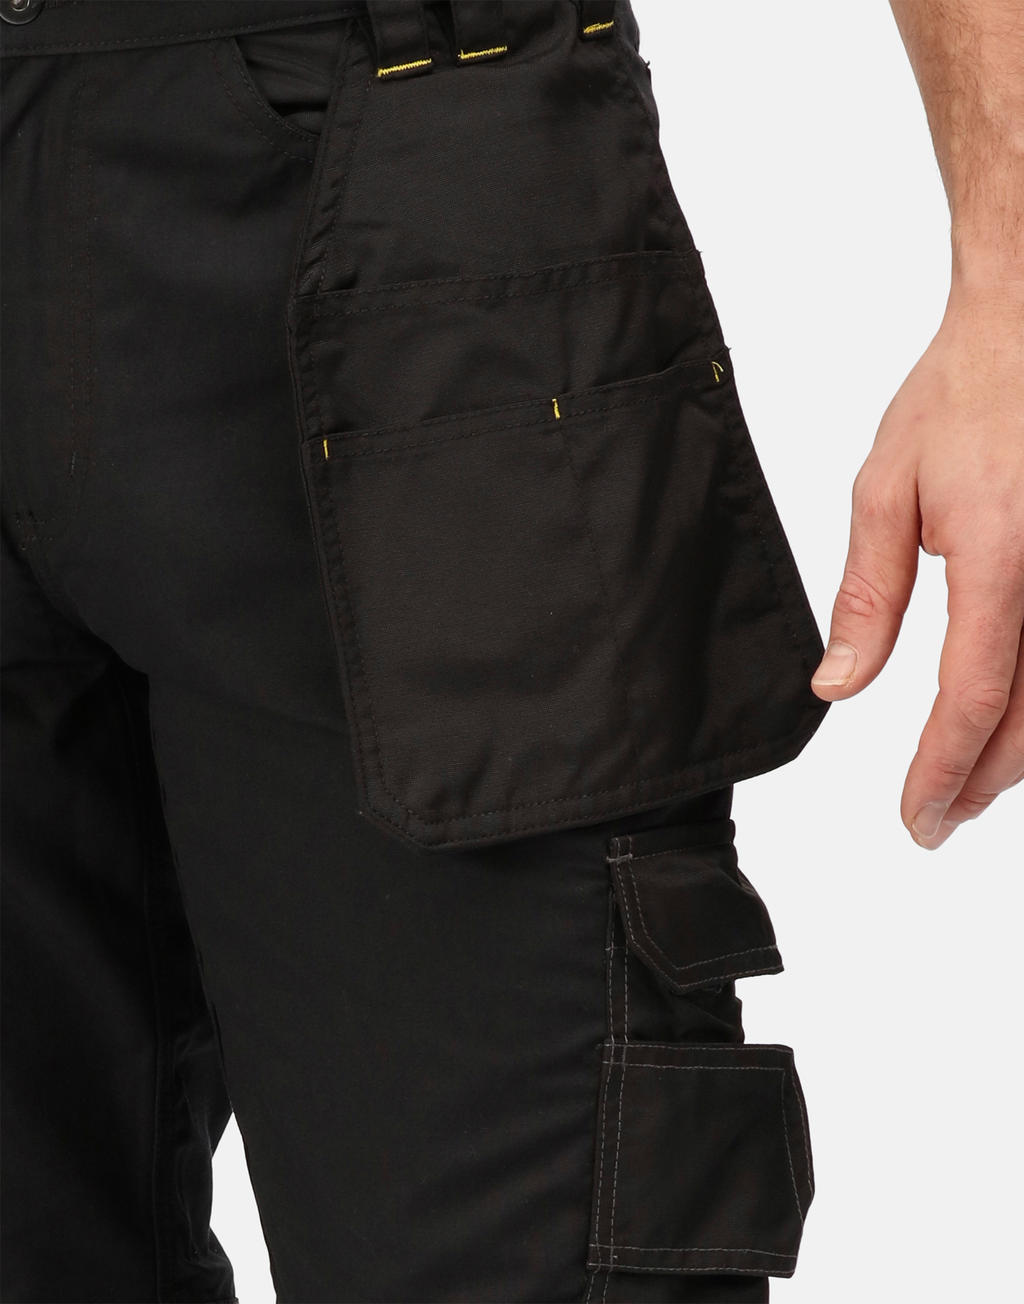  Hardware Holster Trouser (Reg) in Farbe Black